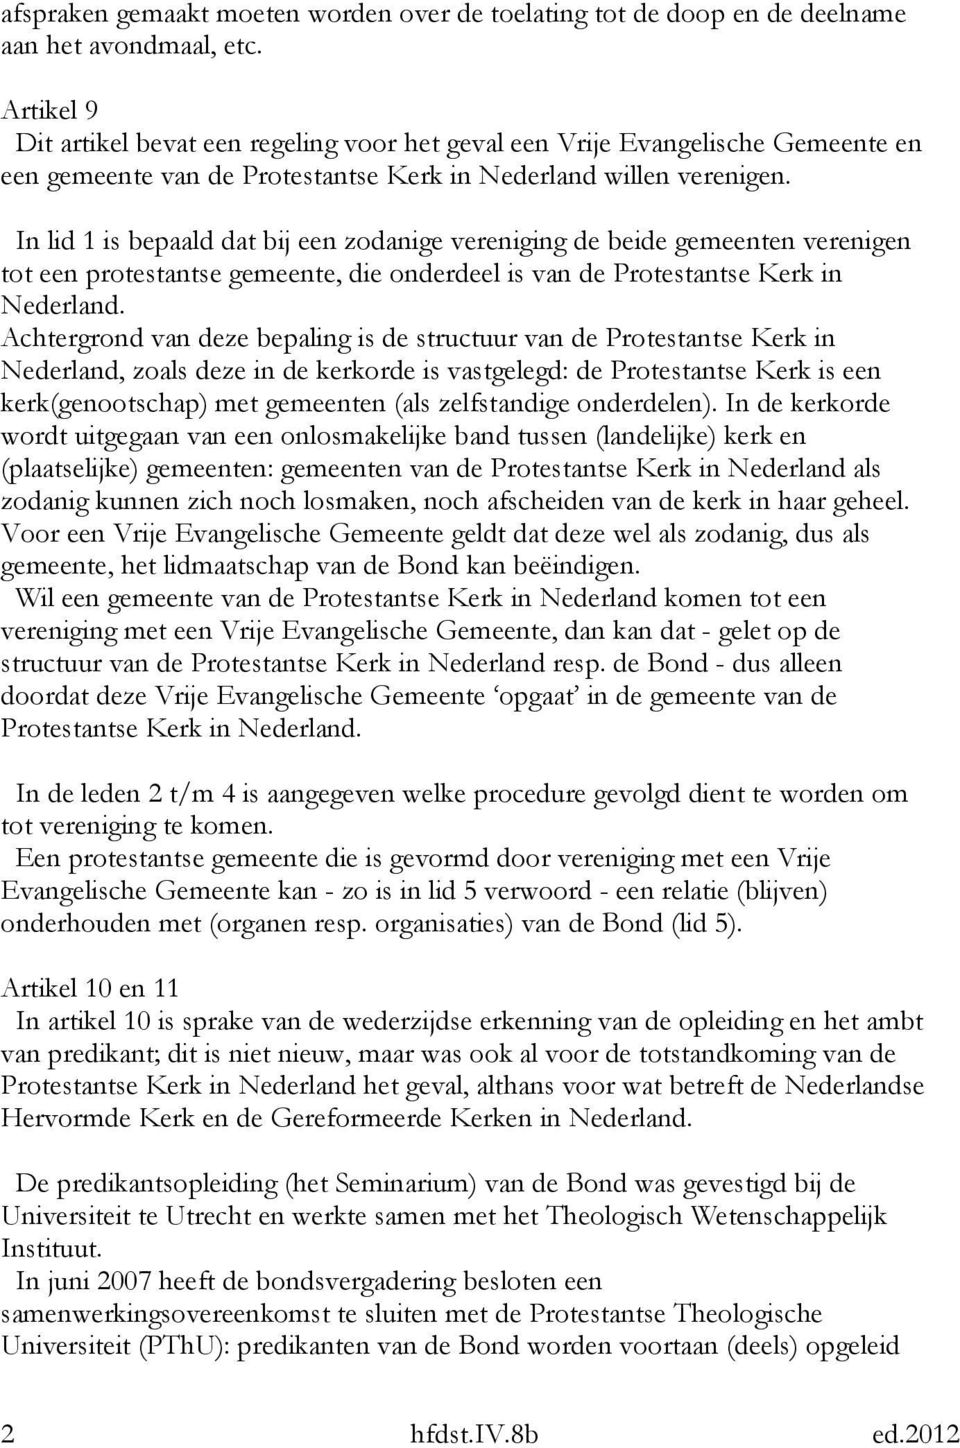 In lid 1 is bepaald dat bij een zodanige vereniging de beide gemeenten verenigen tot een protestantse gemeente, die onderdeel is van de Protestantse Kerk in Nederland.